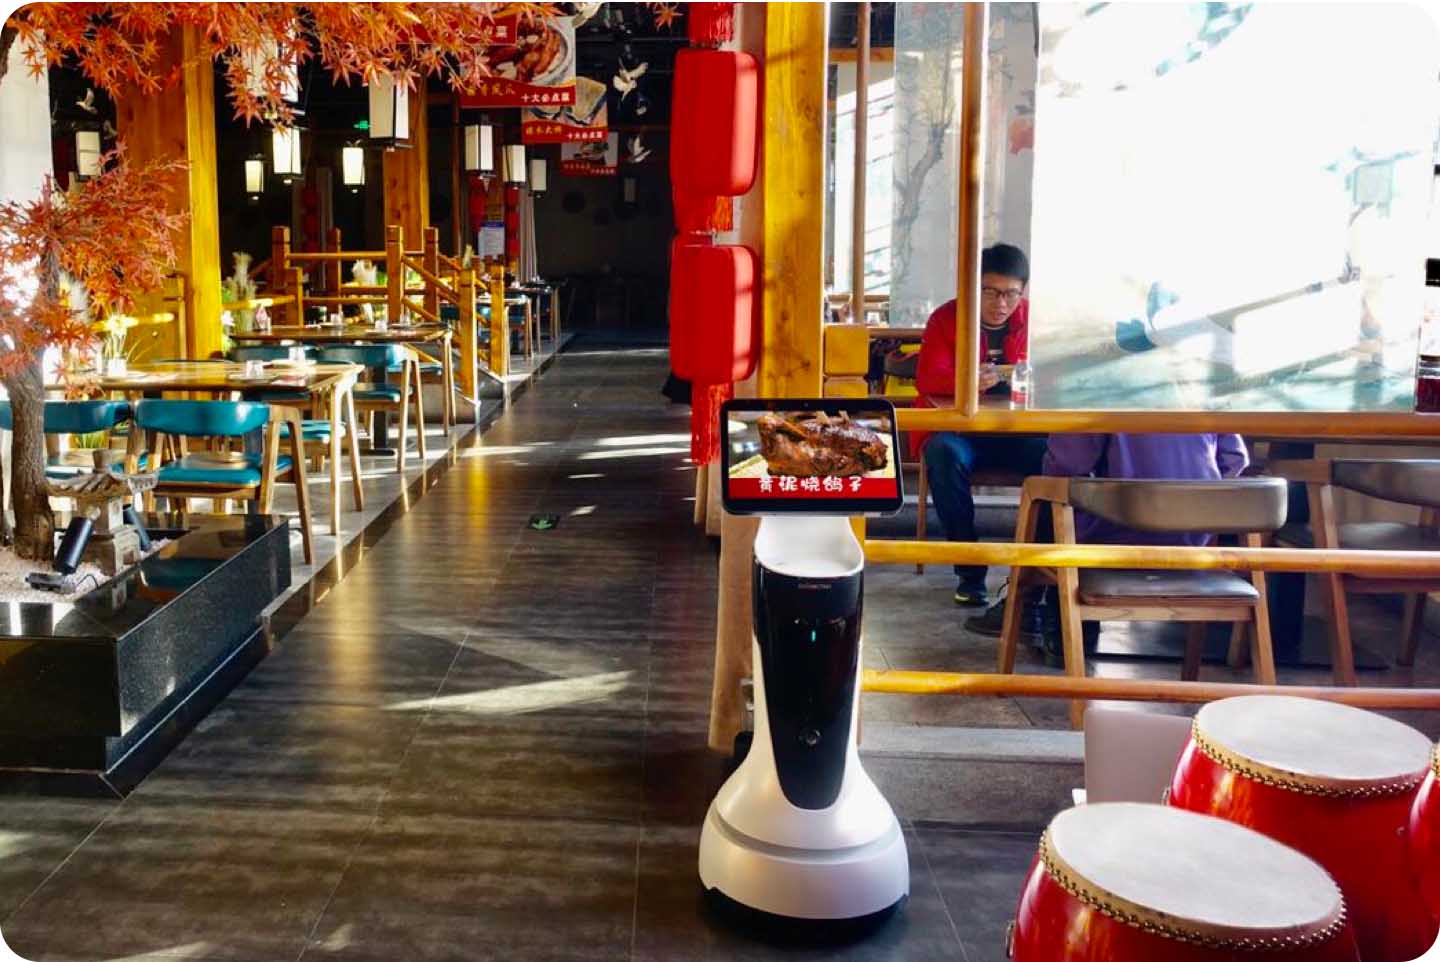 Robot de recepción con IA